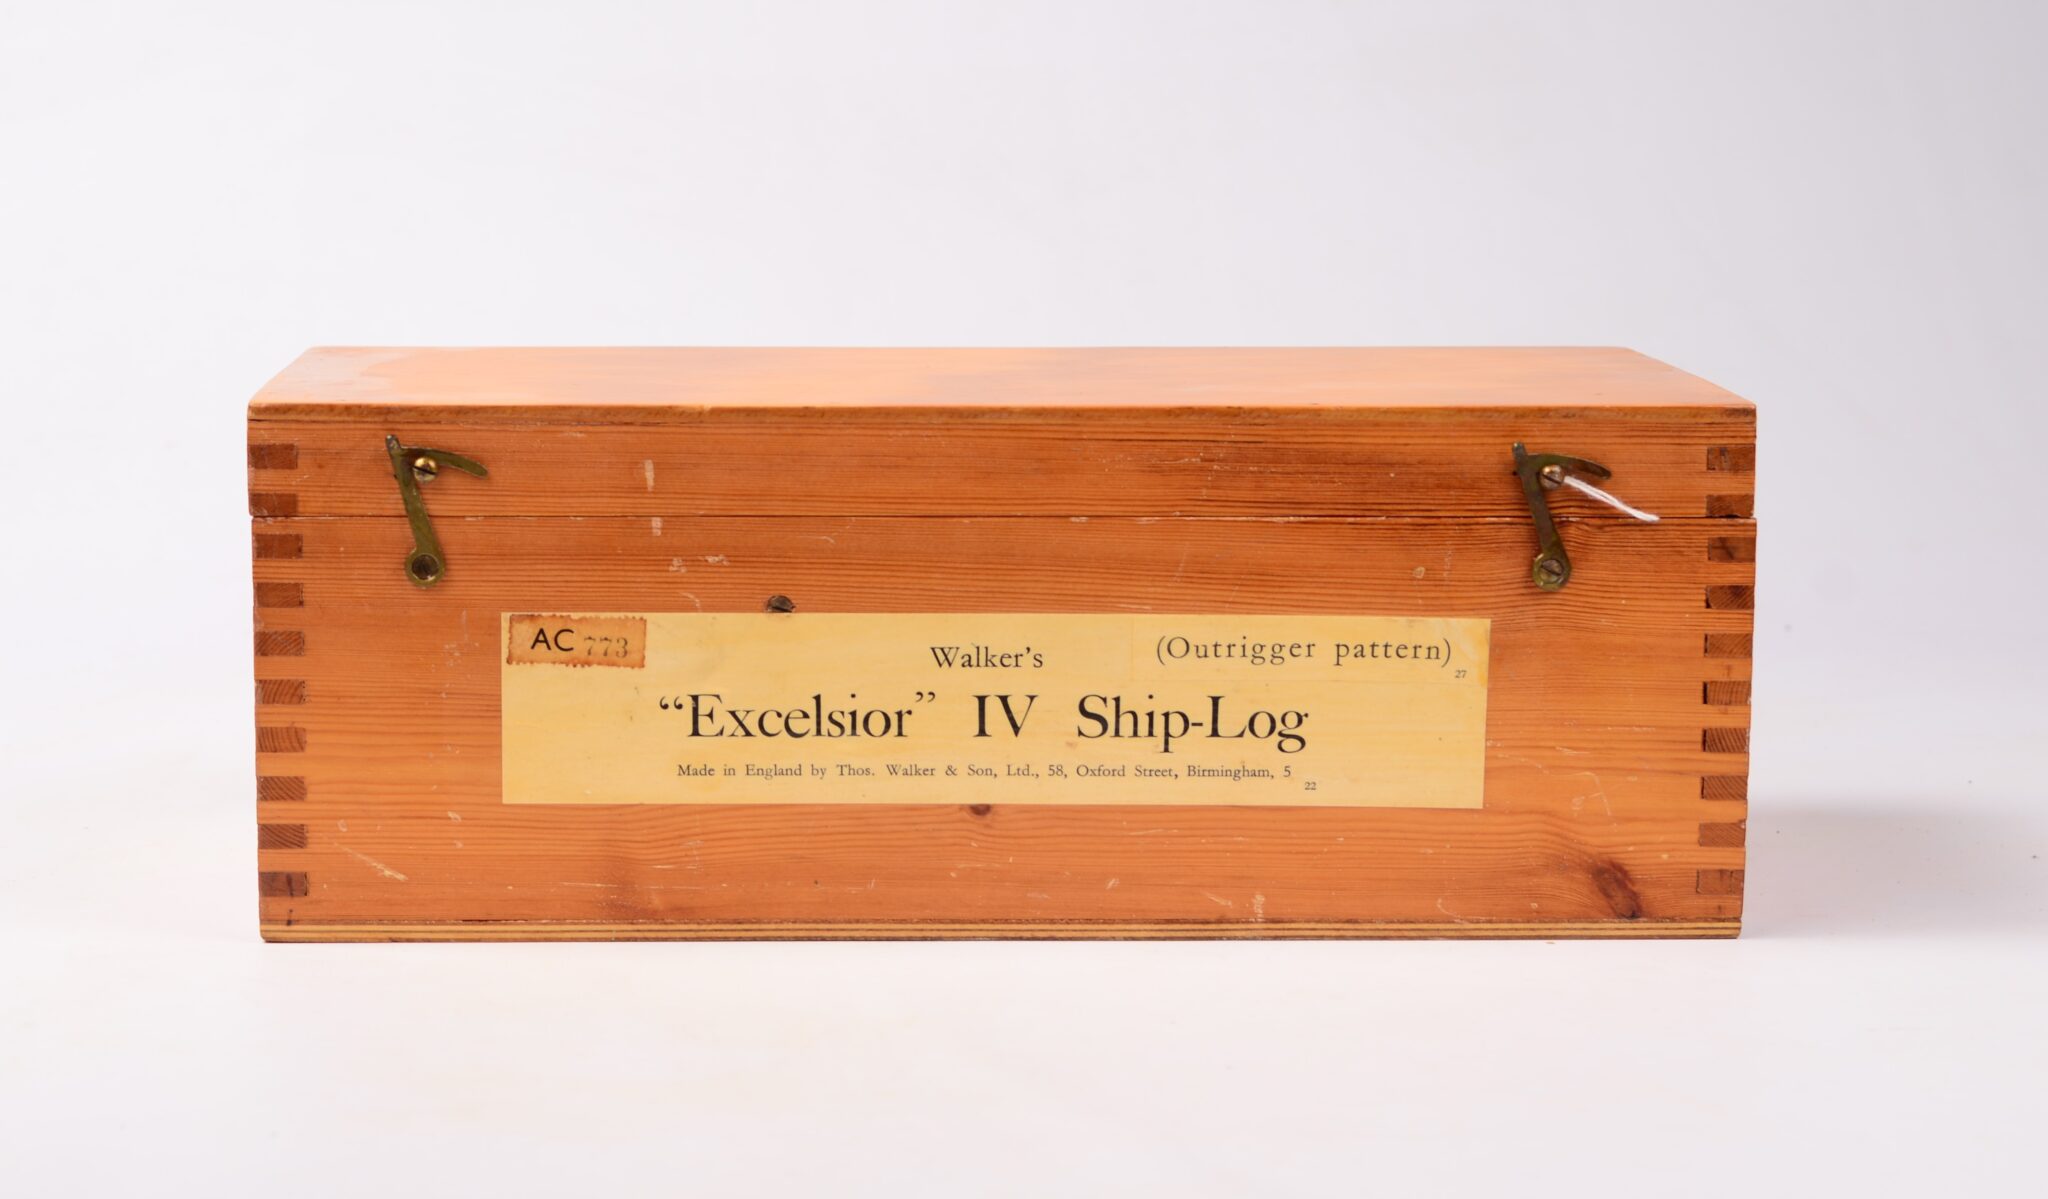 Excelsior IV Ship-log with Rotator – Walker’s, Birmingham